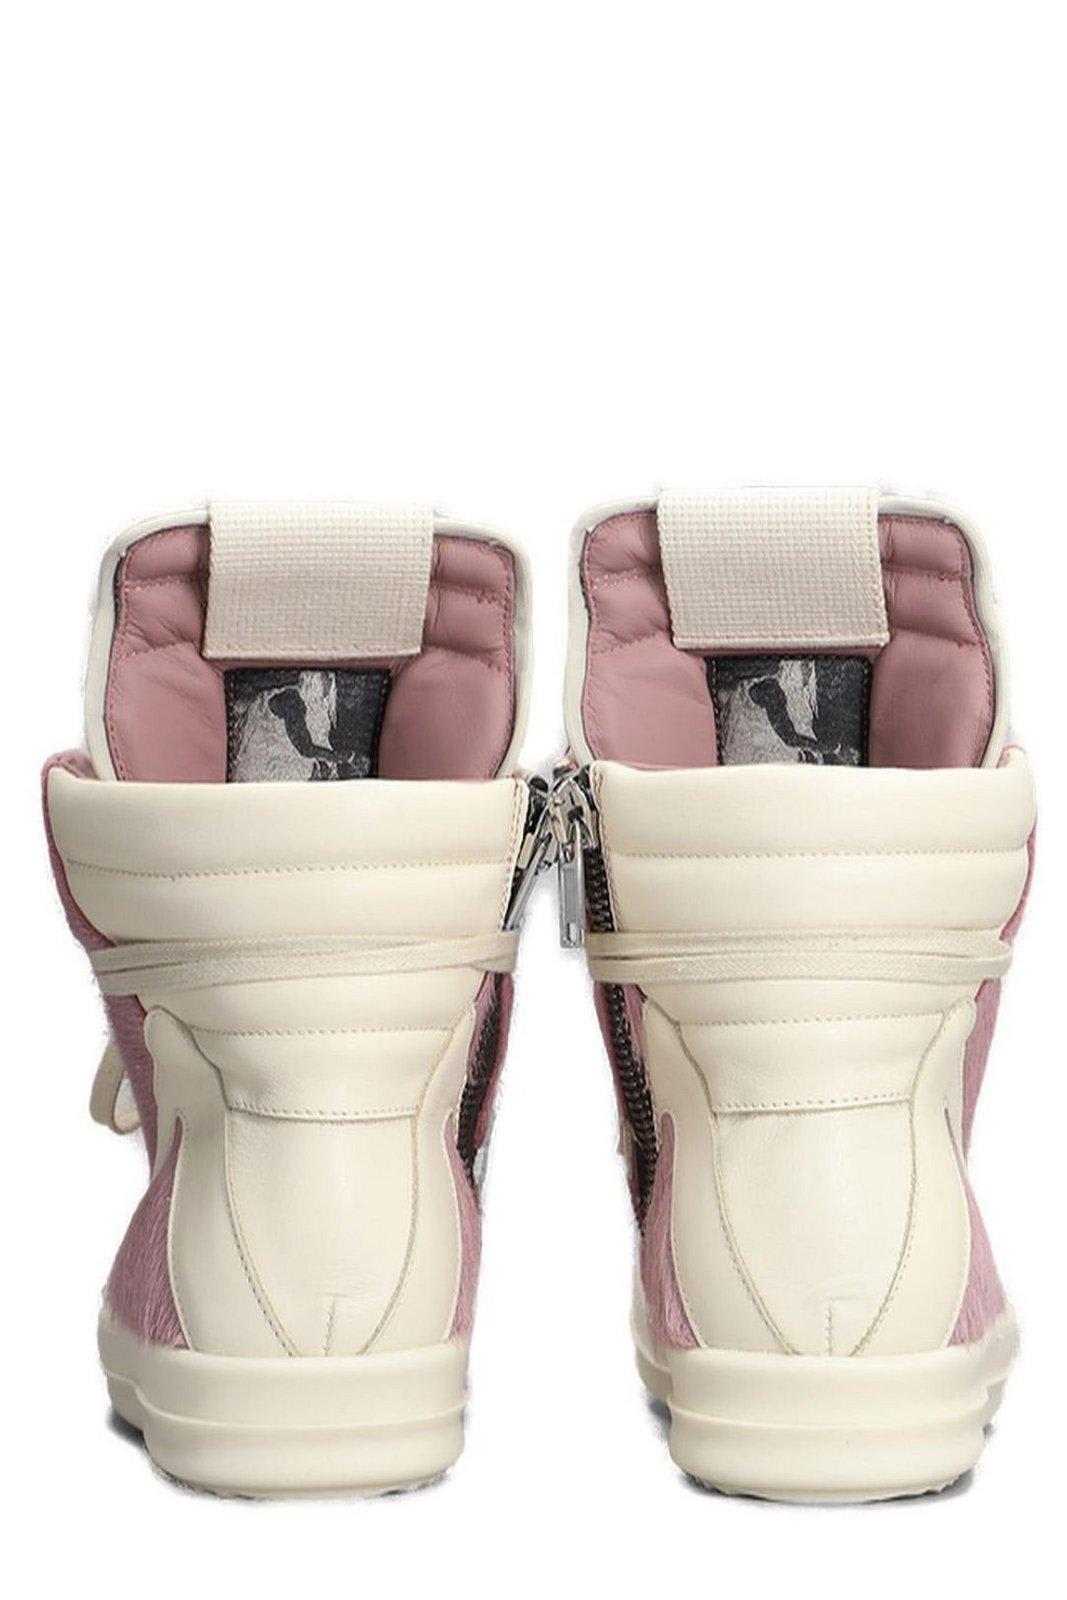 Shop Rick Owens Geobasket High-top Sneakers In Dusty Pink Milk